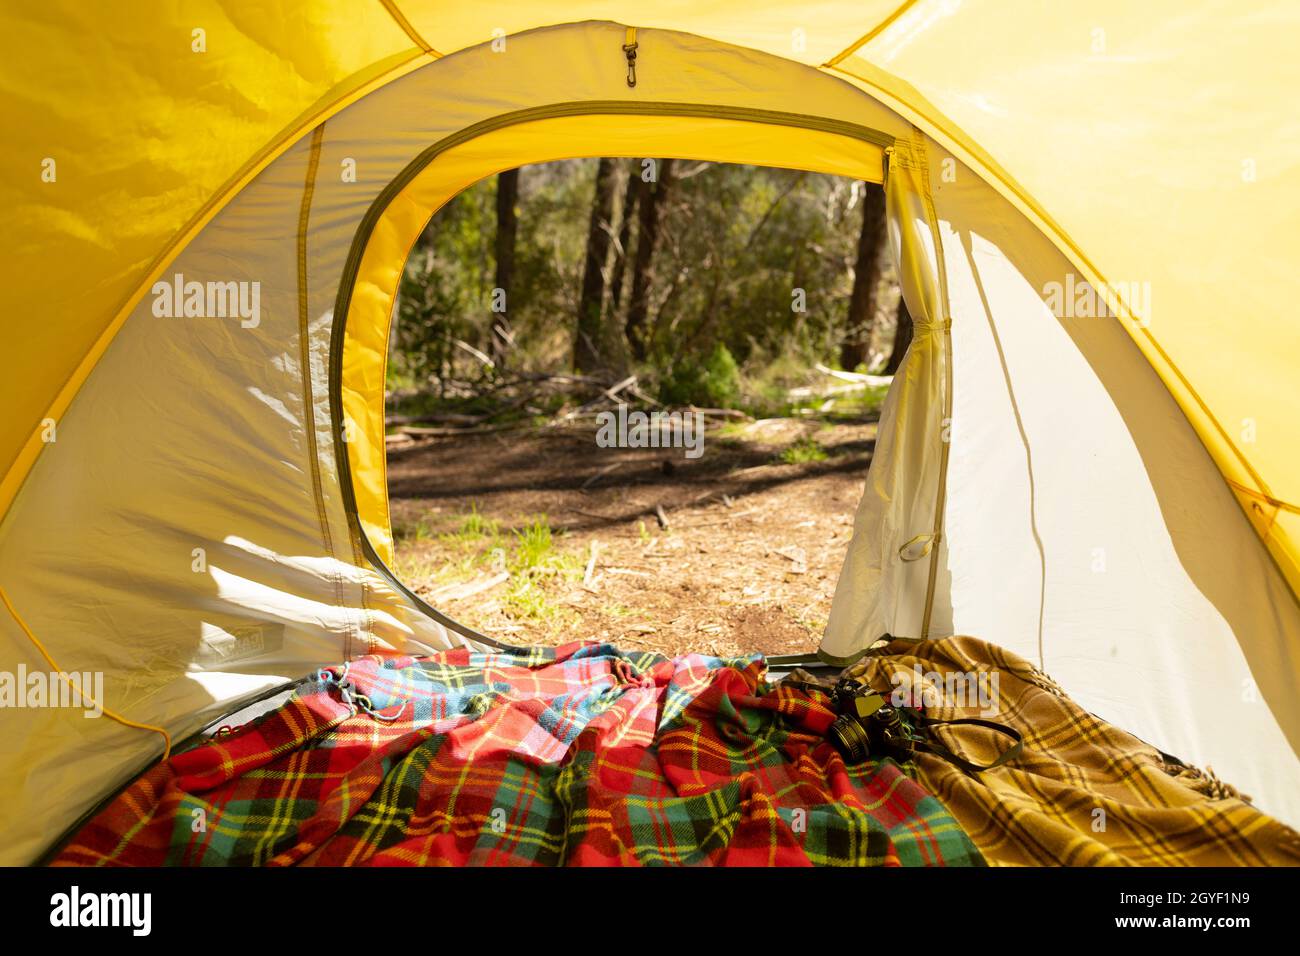 Im Inneren des gelben Zeltes auf der Landseite Stockfoto